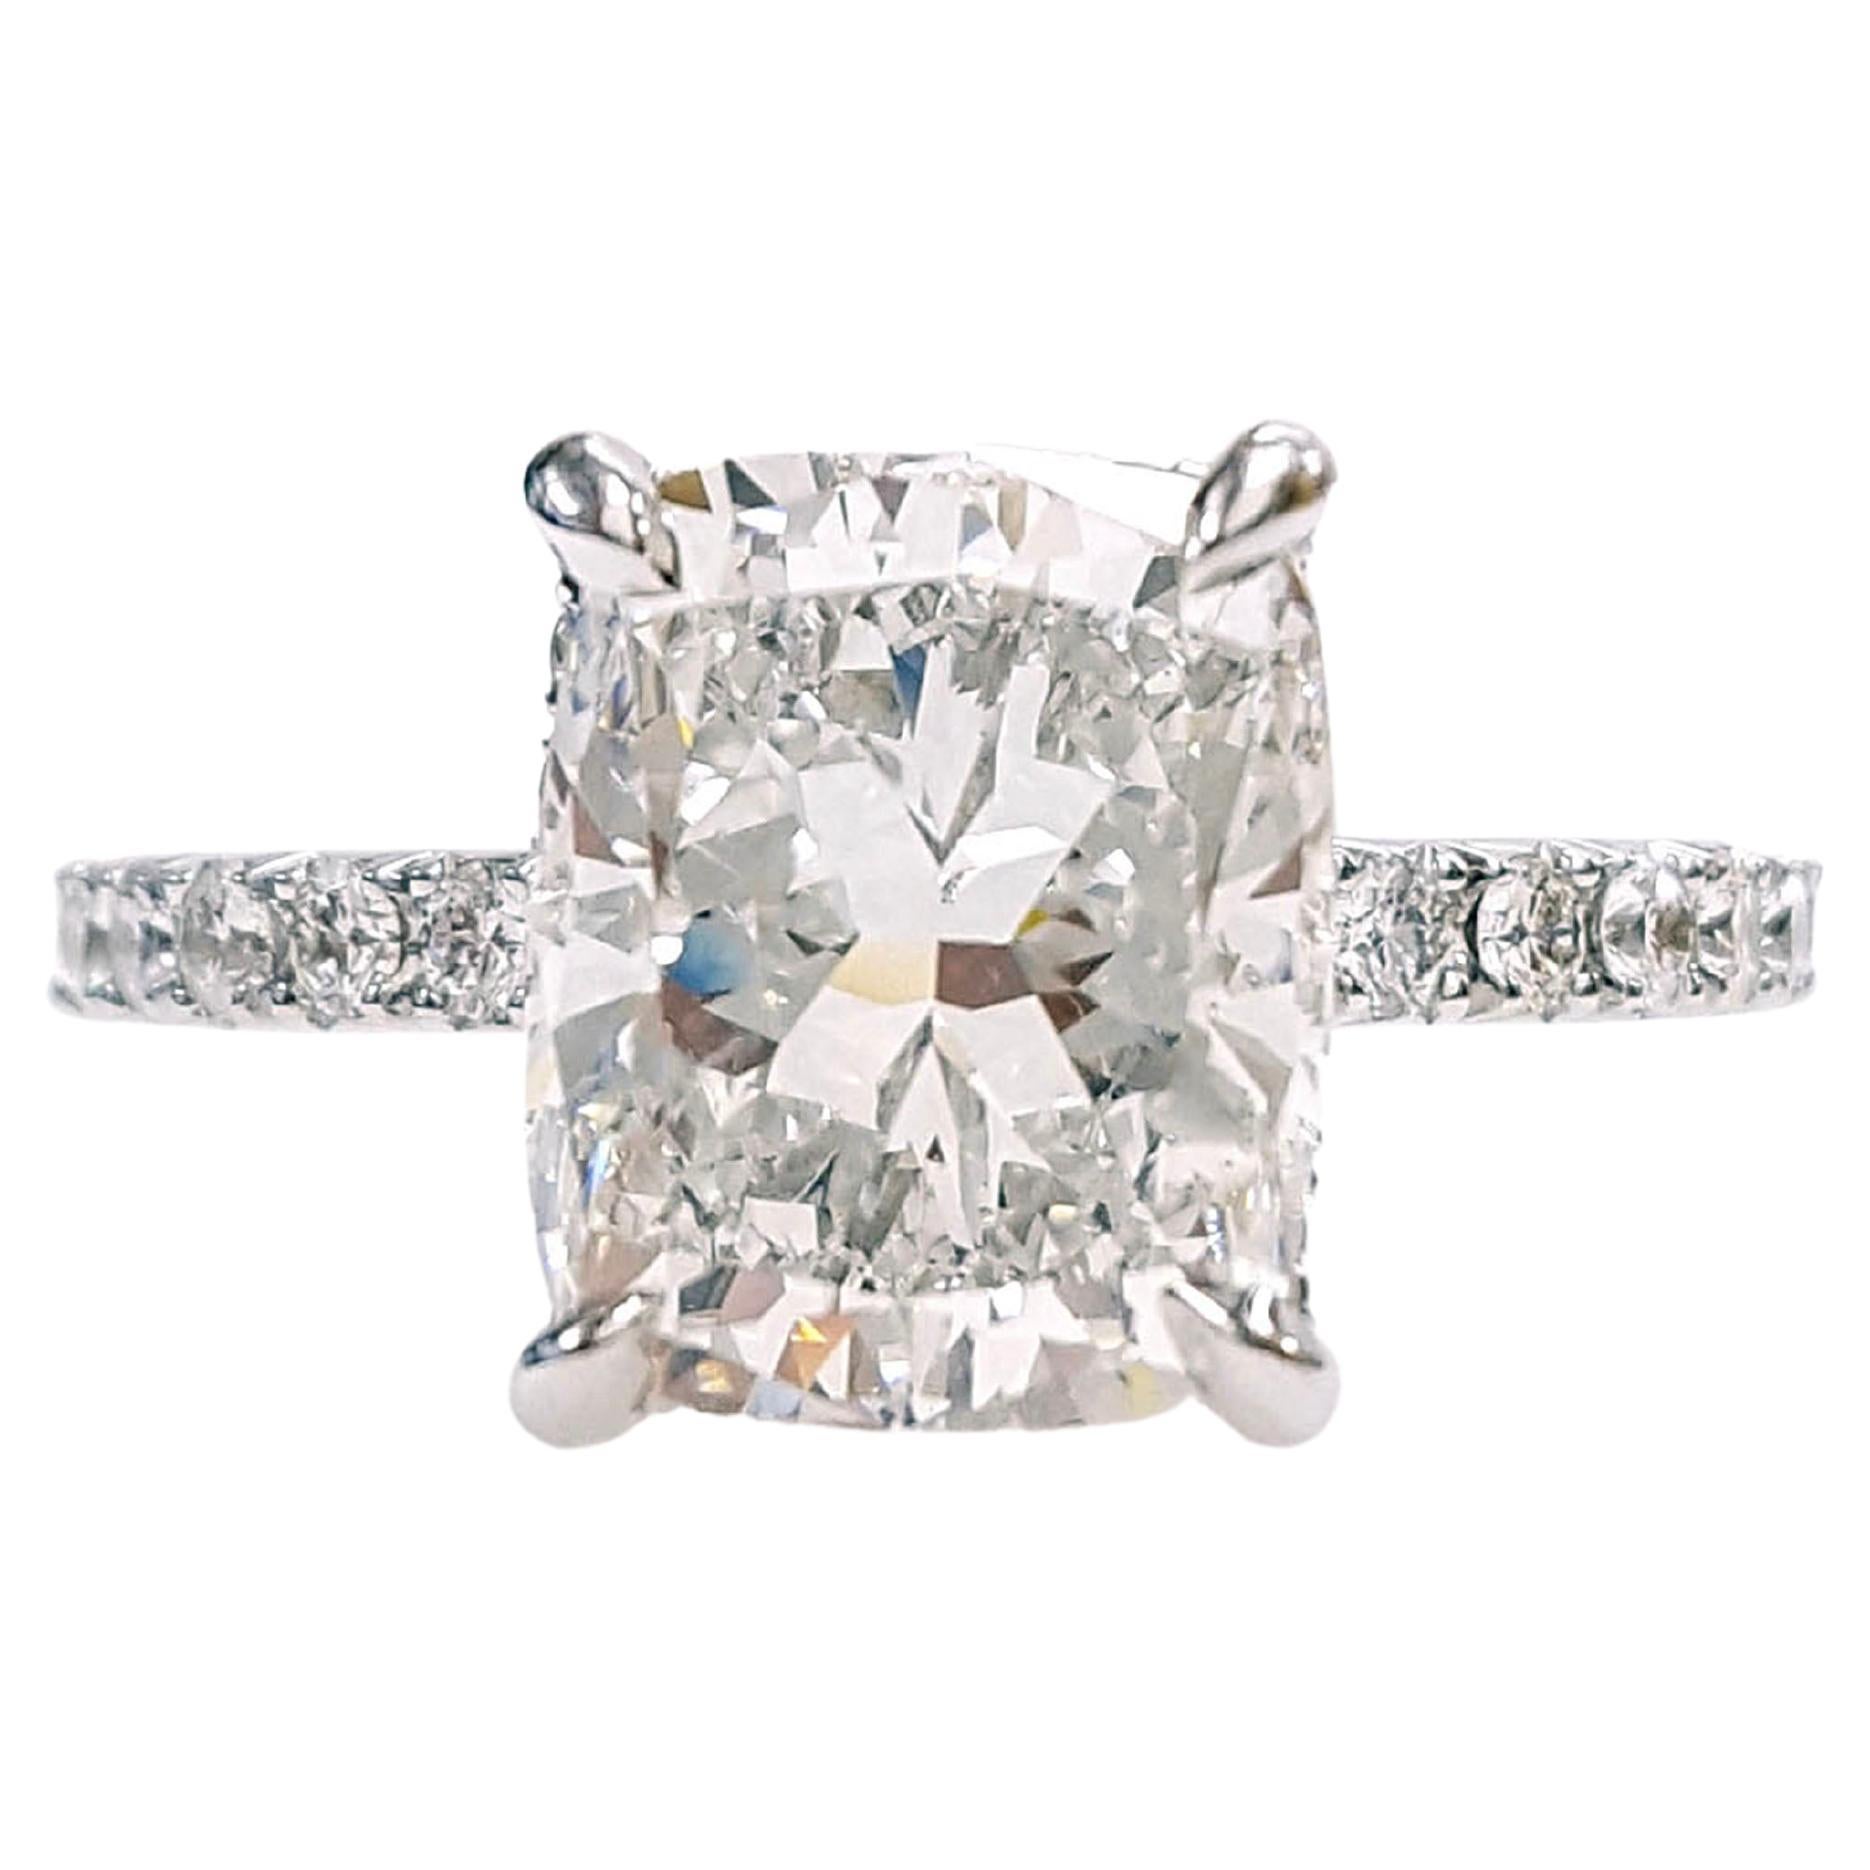 3 Carat Cushion Cut Diamond, Engagement Ring, 18K White Gold, GIA Certified